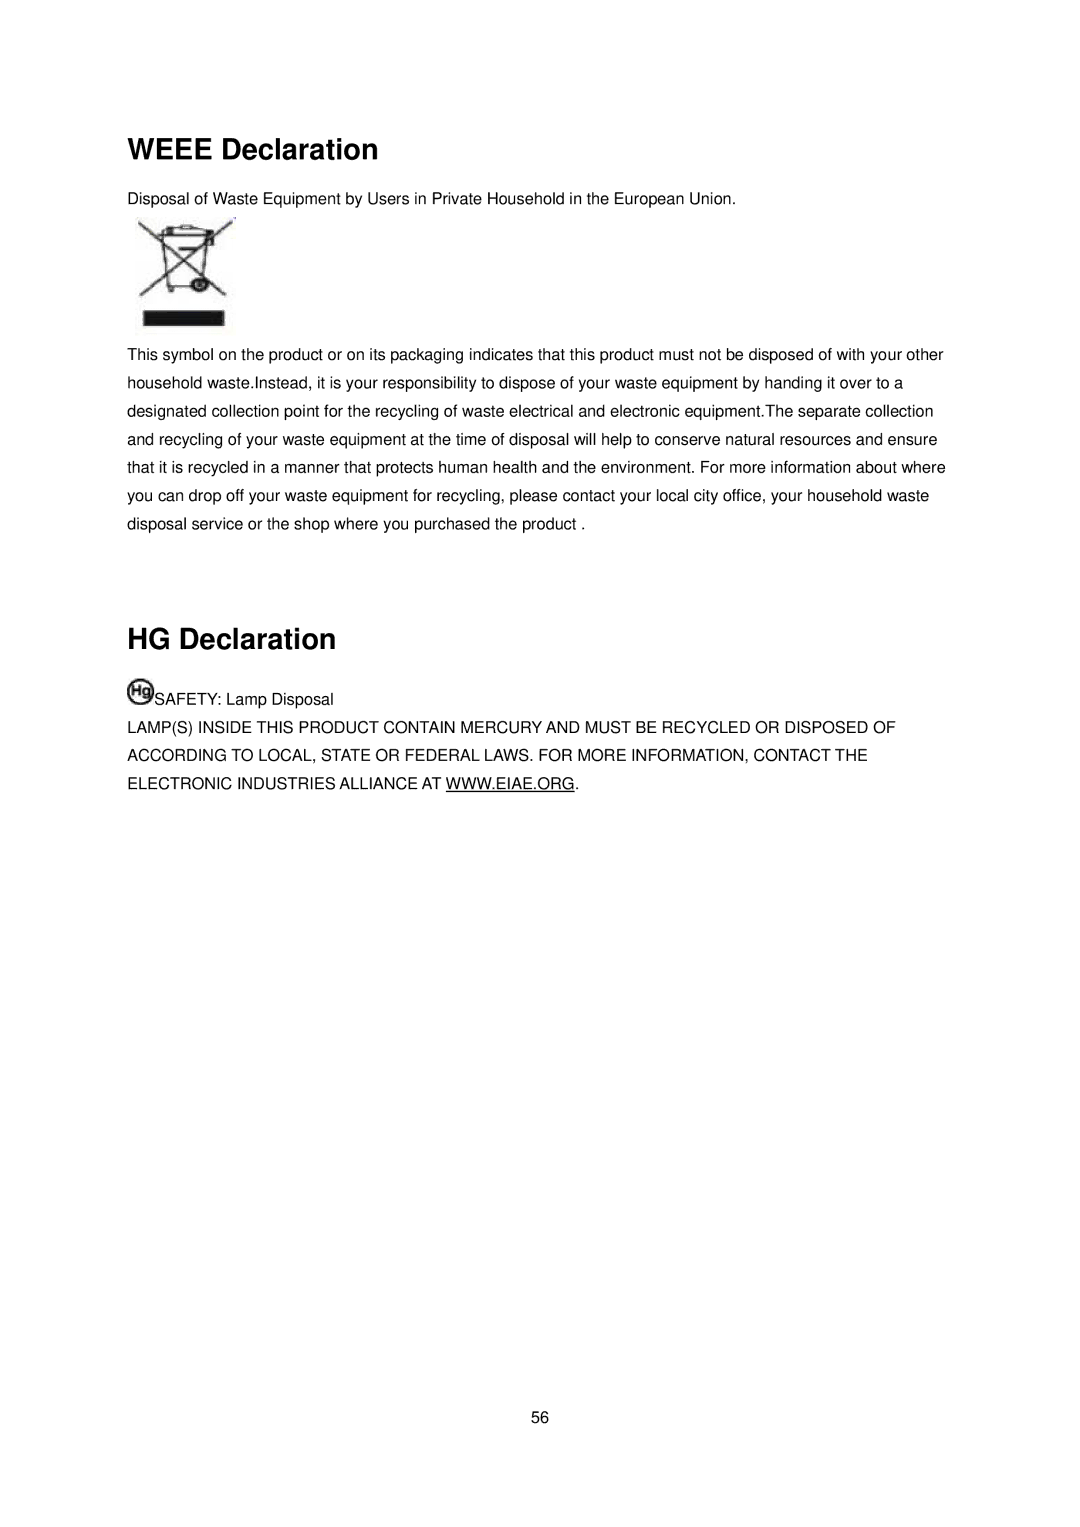 AOC N941SW manual Weee Declaration, HG Declaration 